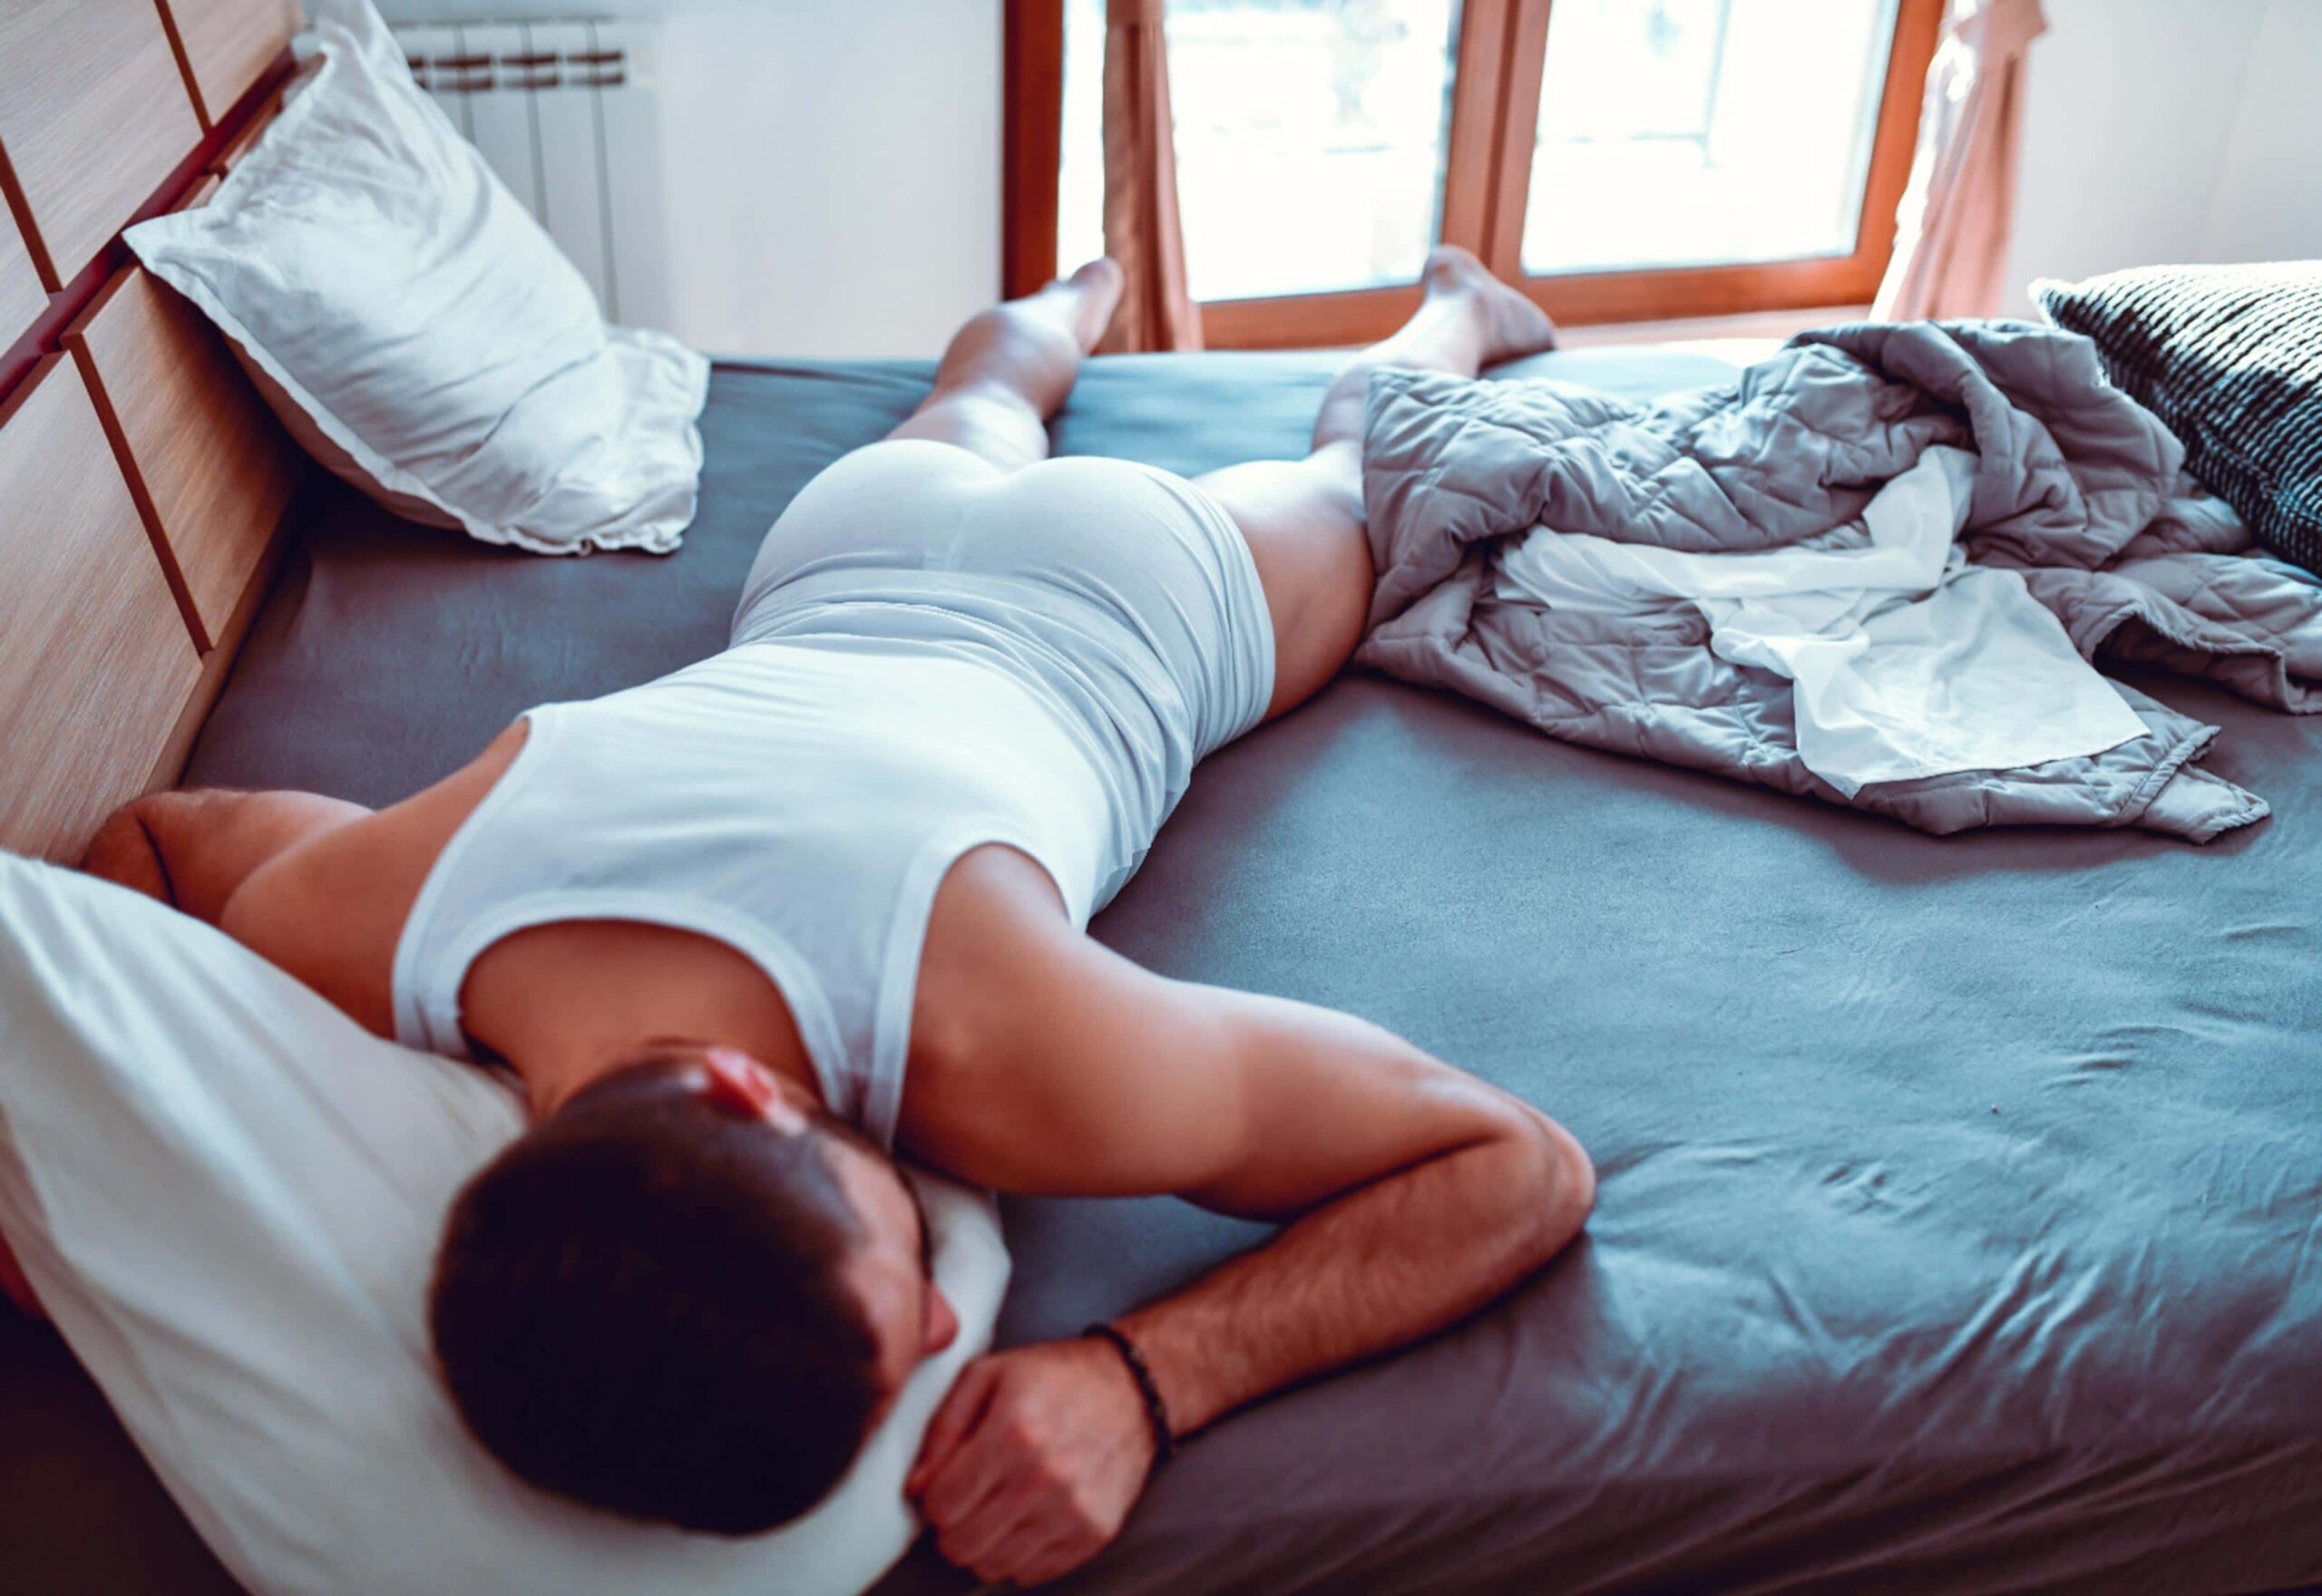 ¿Dormir sin calzoncillos es bueno?